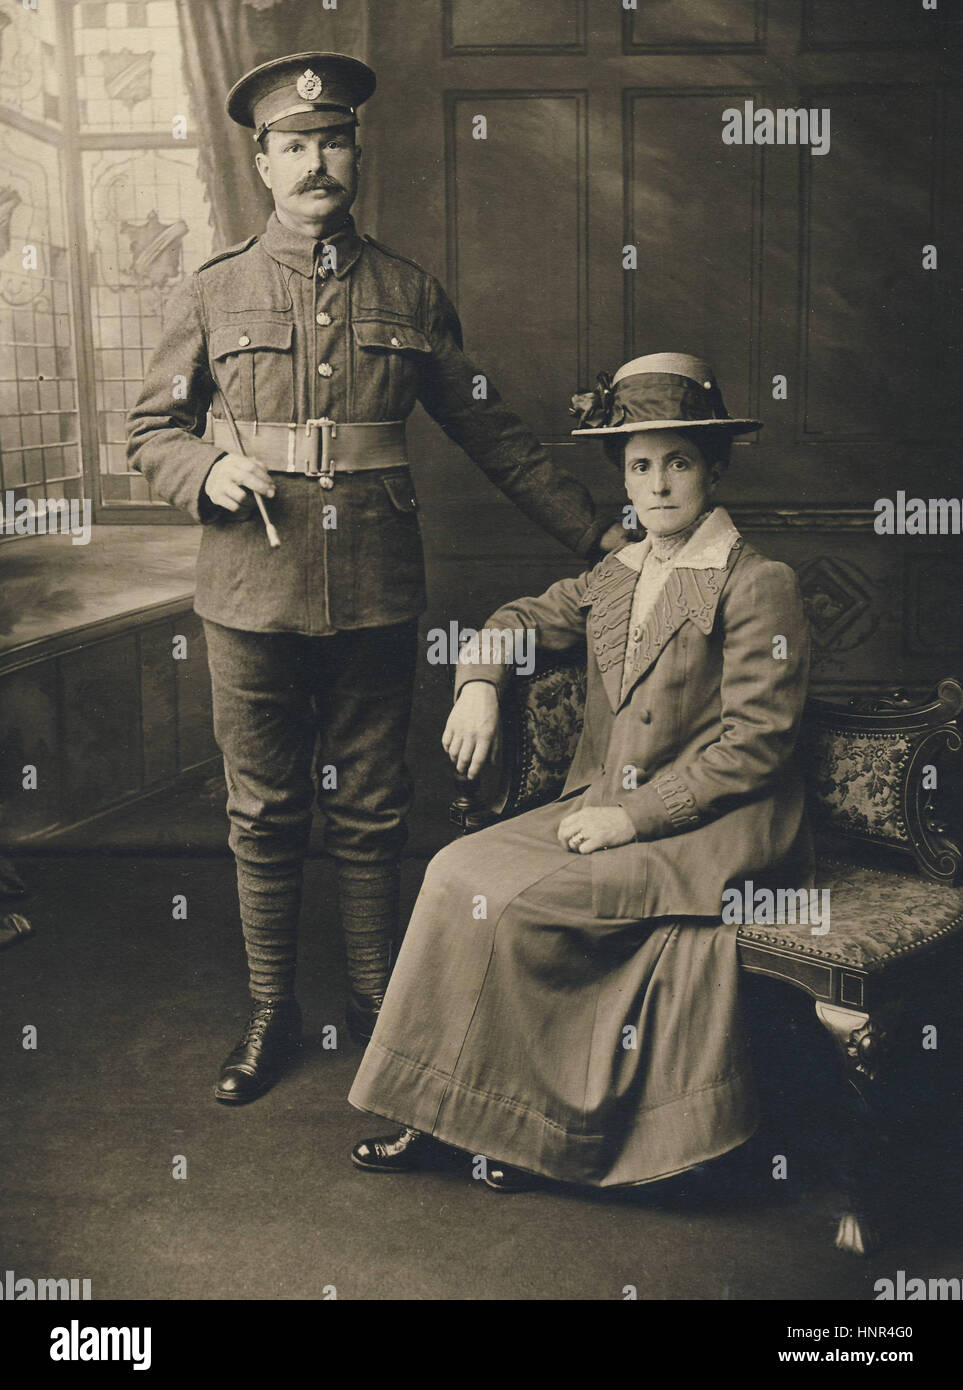 Archiv Bild - Studio Porttrait eines Soldaten des großen Krieges und seiner Frau Stockfoto